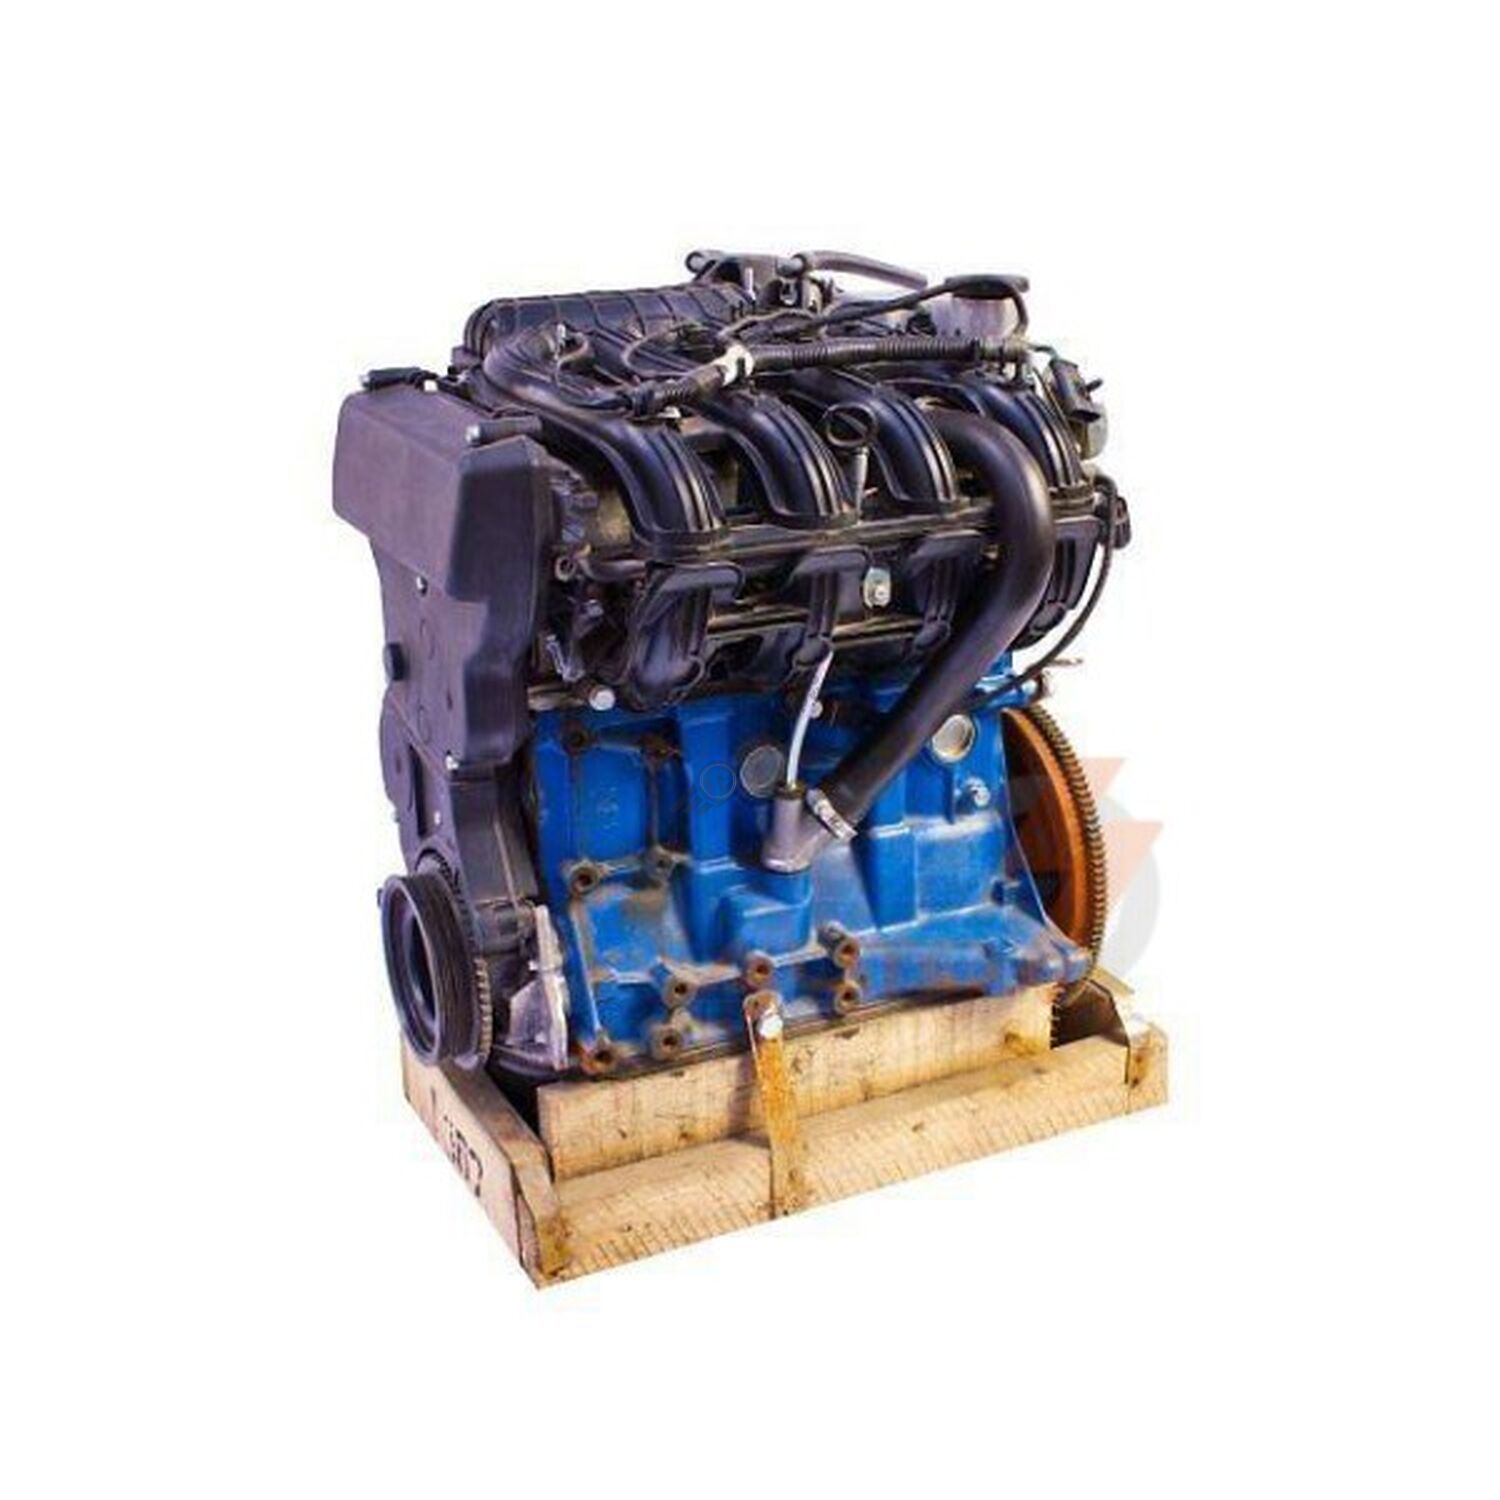 Новый двигатели ваз в тольятти. Мотор ВАЗ 11194. Двигатель 11194 1.4 16 клапанов. Двигатель ВАЗ 11194 1.4 16кл. Мотор 11194 мотор ВАЗ.